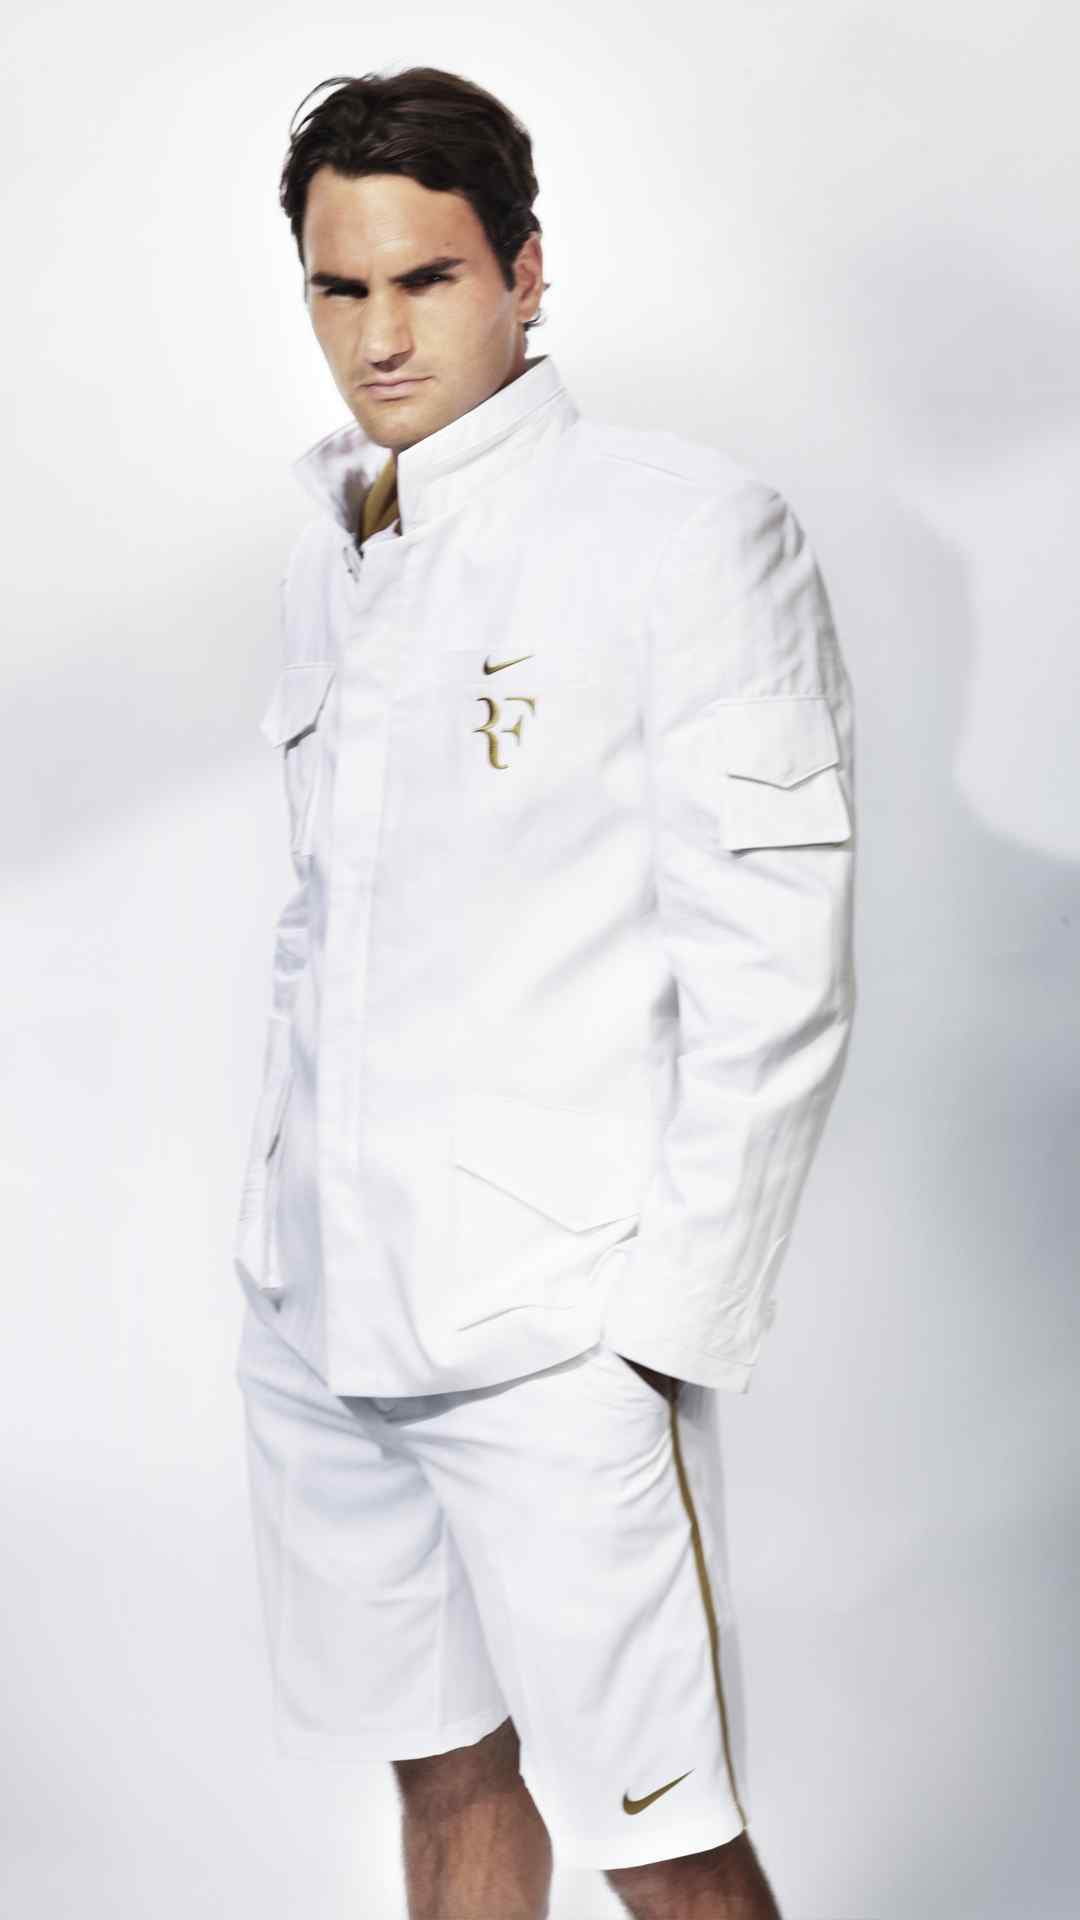 瑞士天王费德勒帅气优雅白色战袍手机壁纸第二辑5张